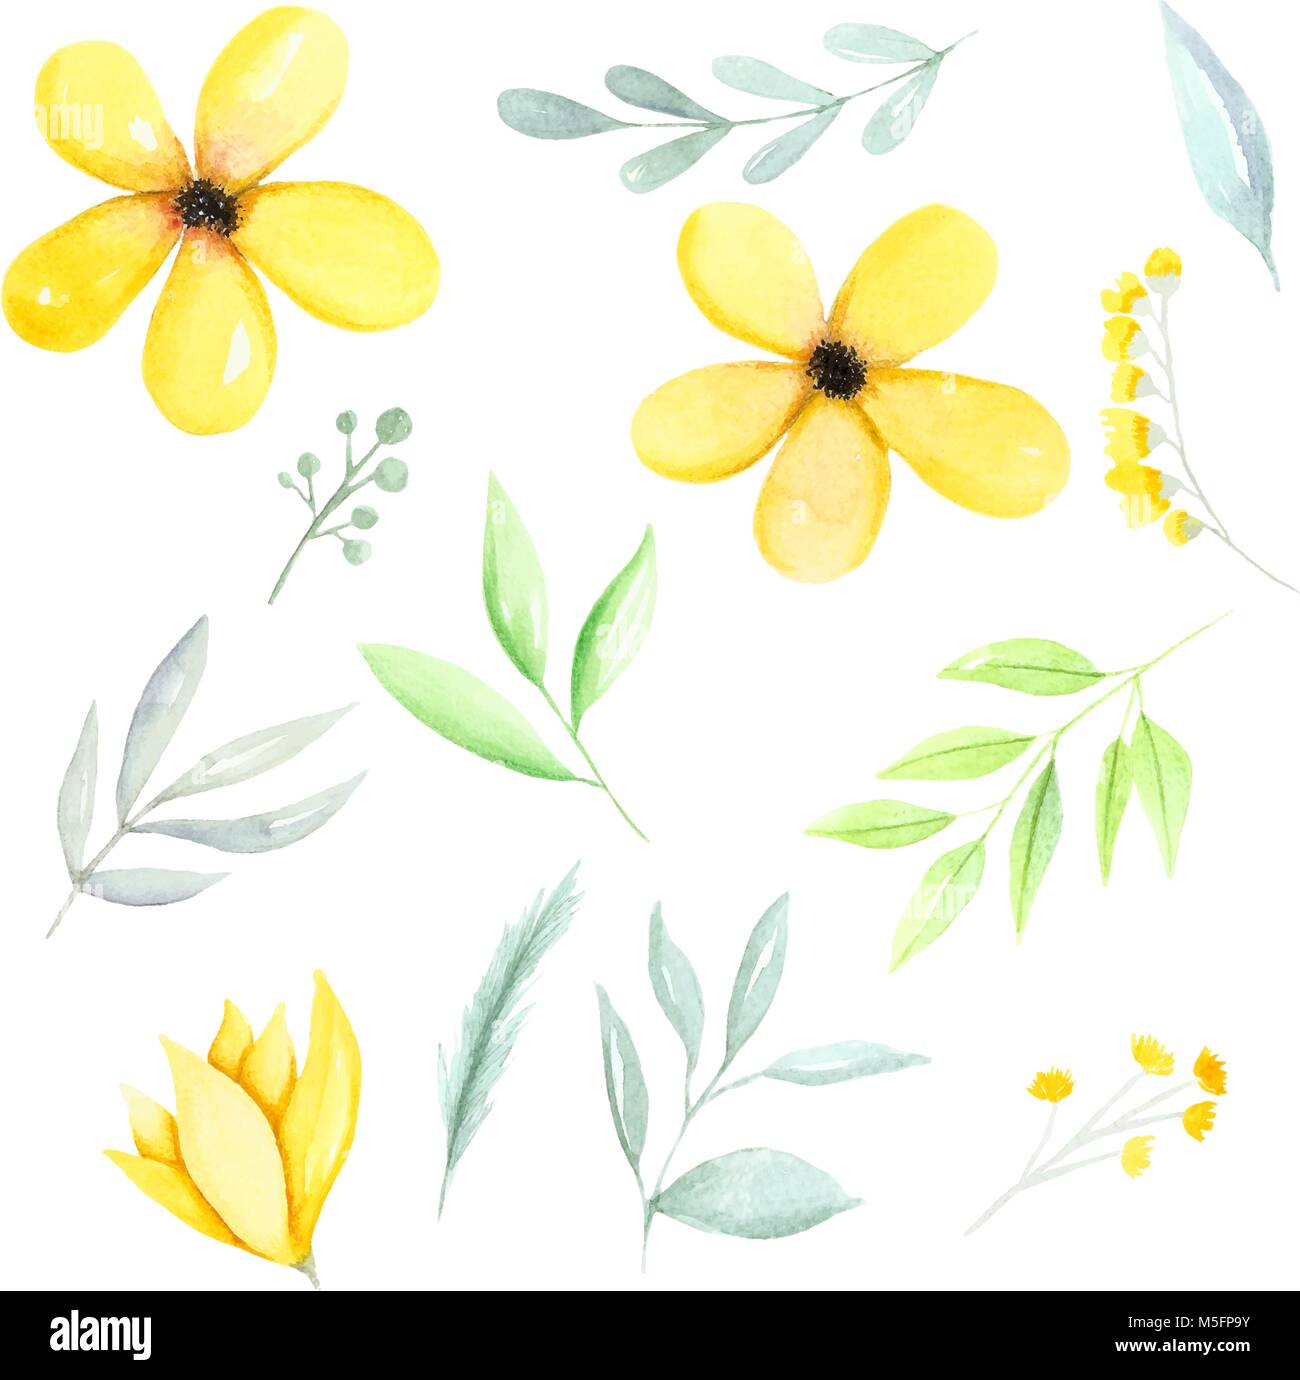 Gelb Aquarell botanischer Elemente, gelbe Blumen, grünen Blätter und Zweige Hand gezeichnet. Aquarell Abbildung Hand gezeichnet. Stock Vektor